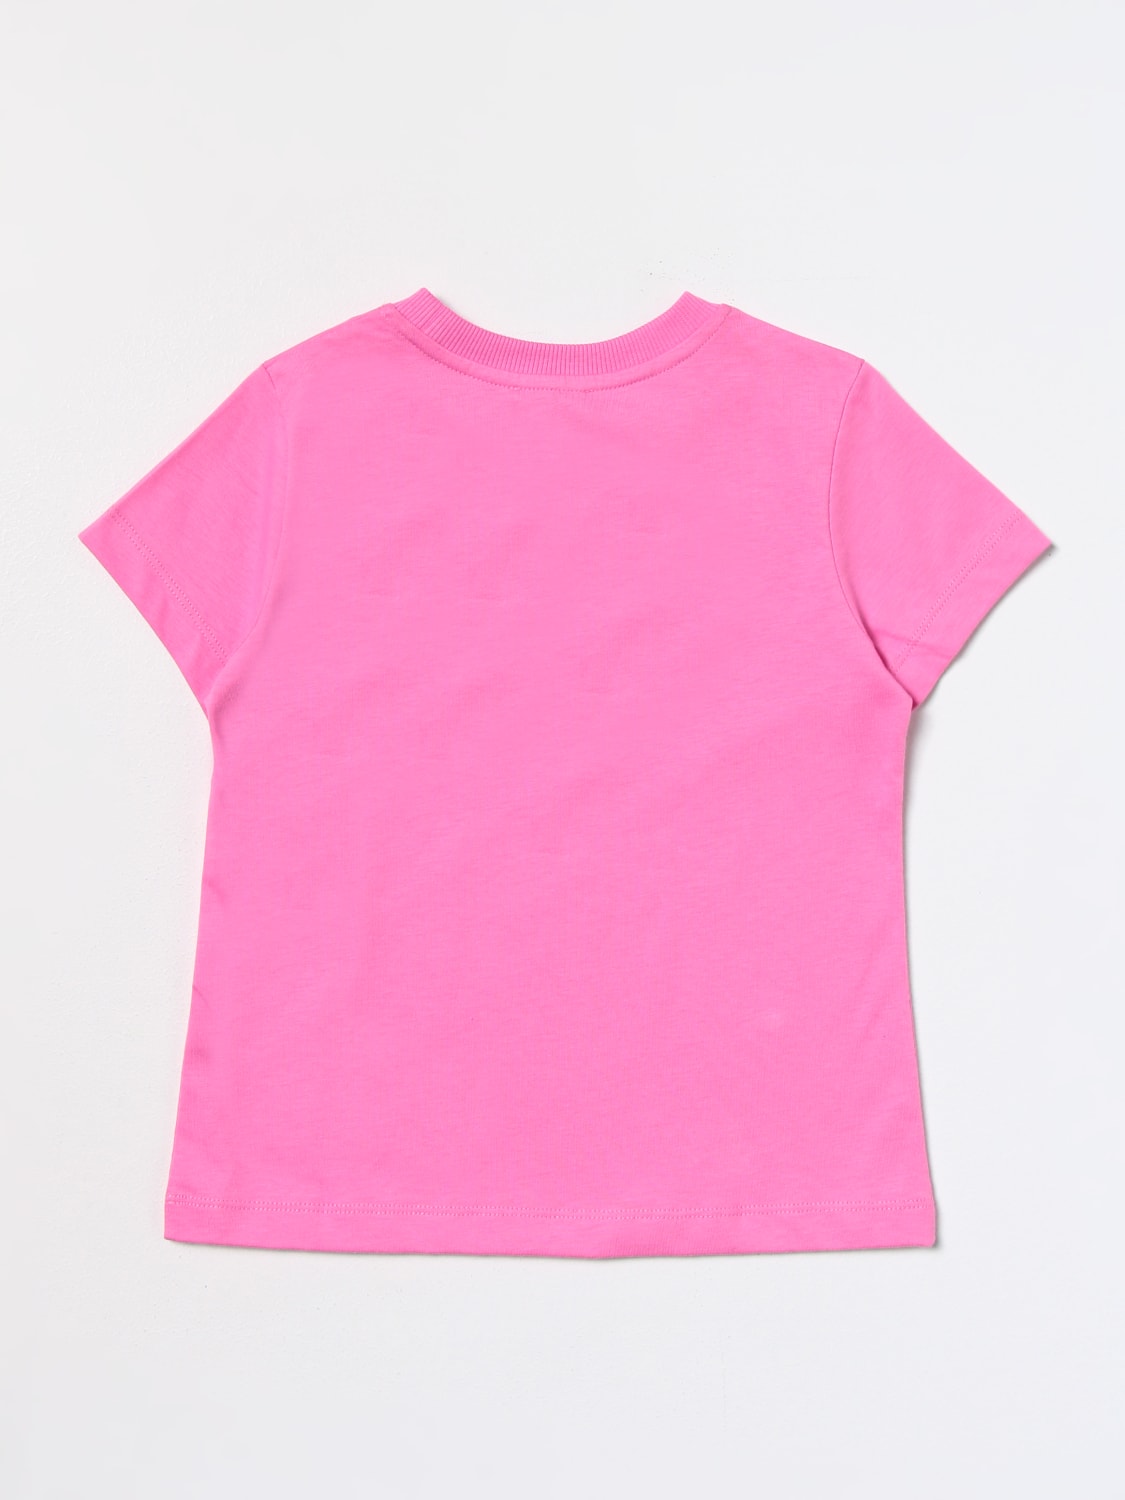 MOSCHINO KID: t-shirt in cotton - Fuchsia | Moschino Kid t-shirt ...